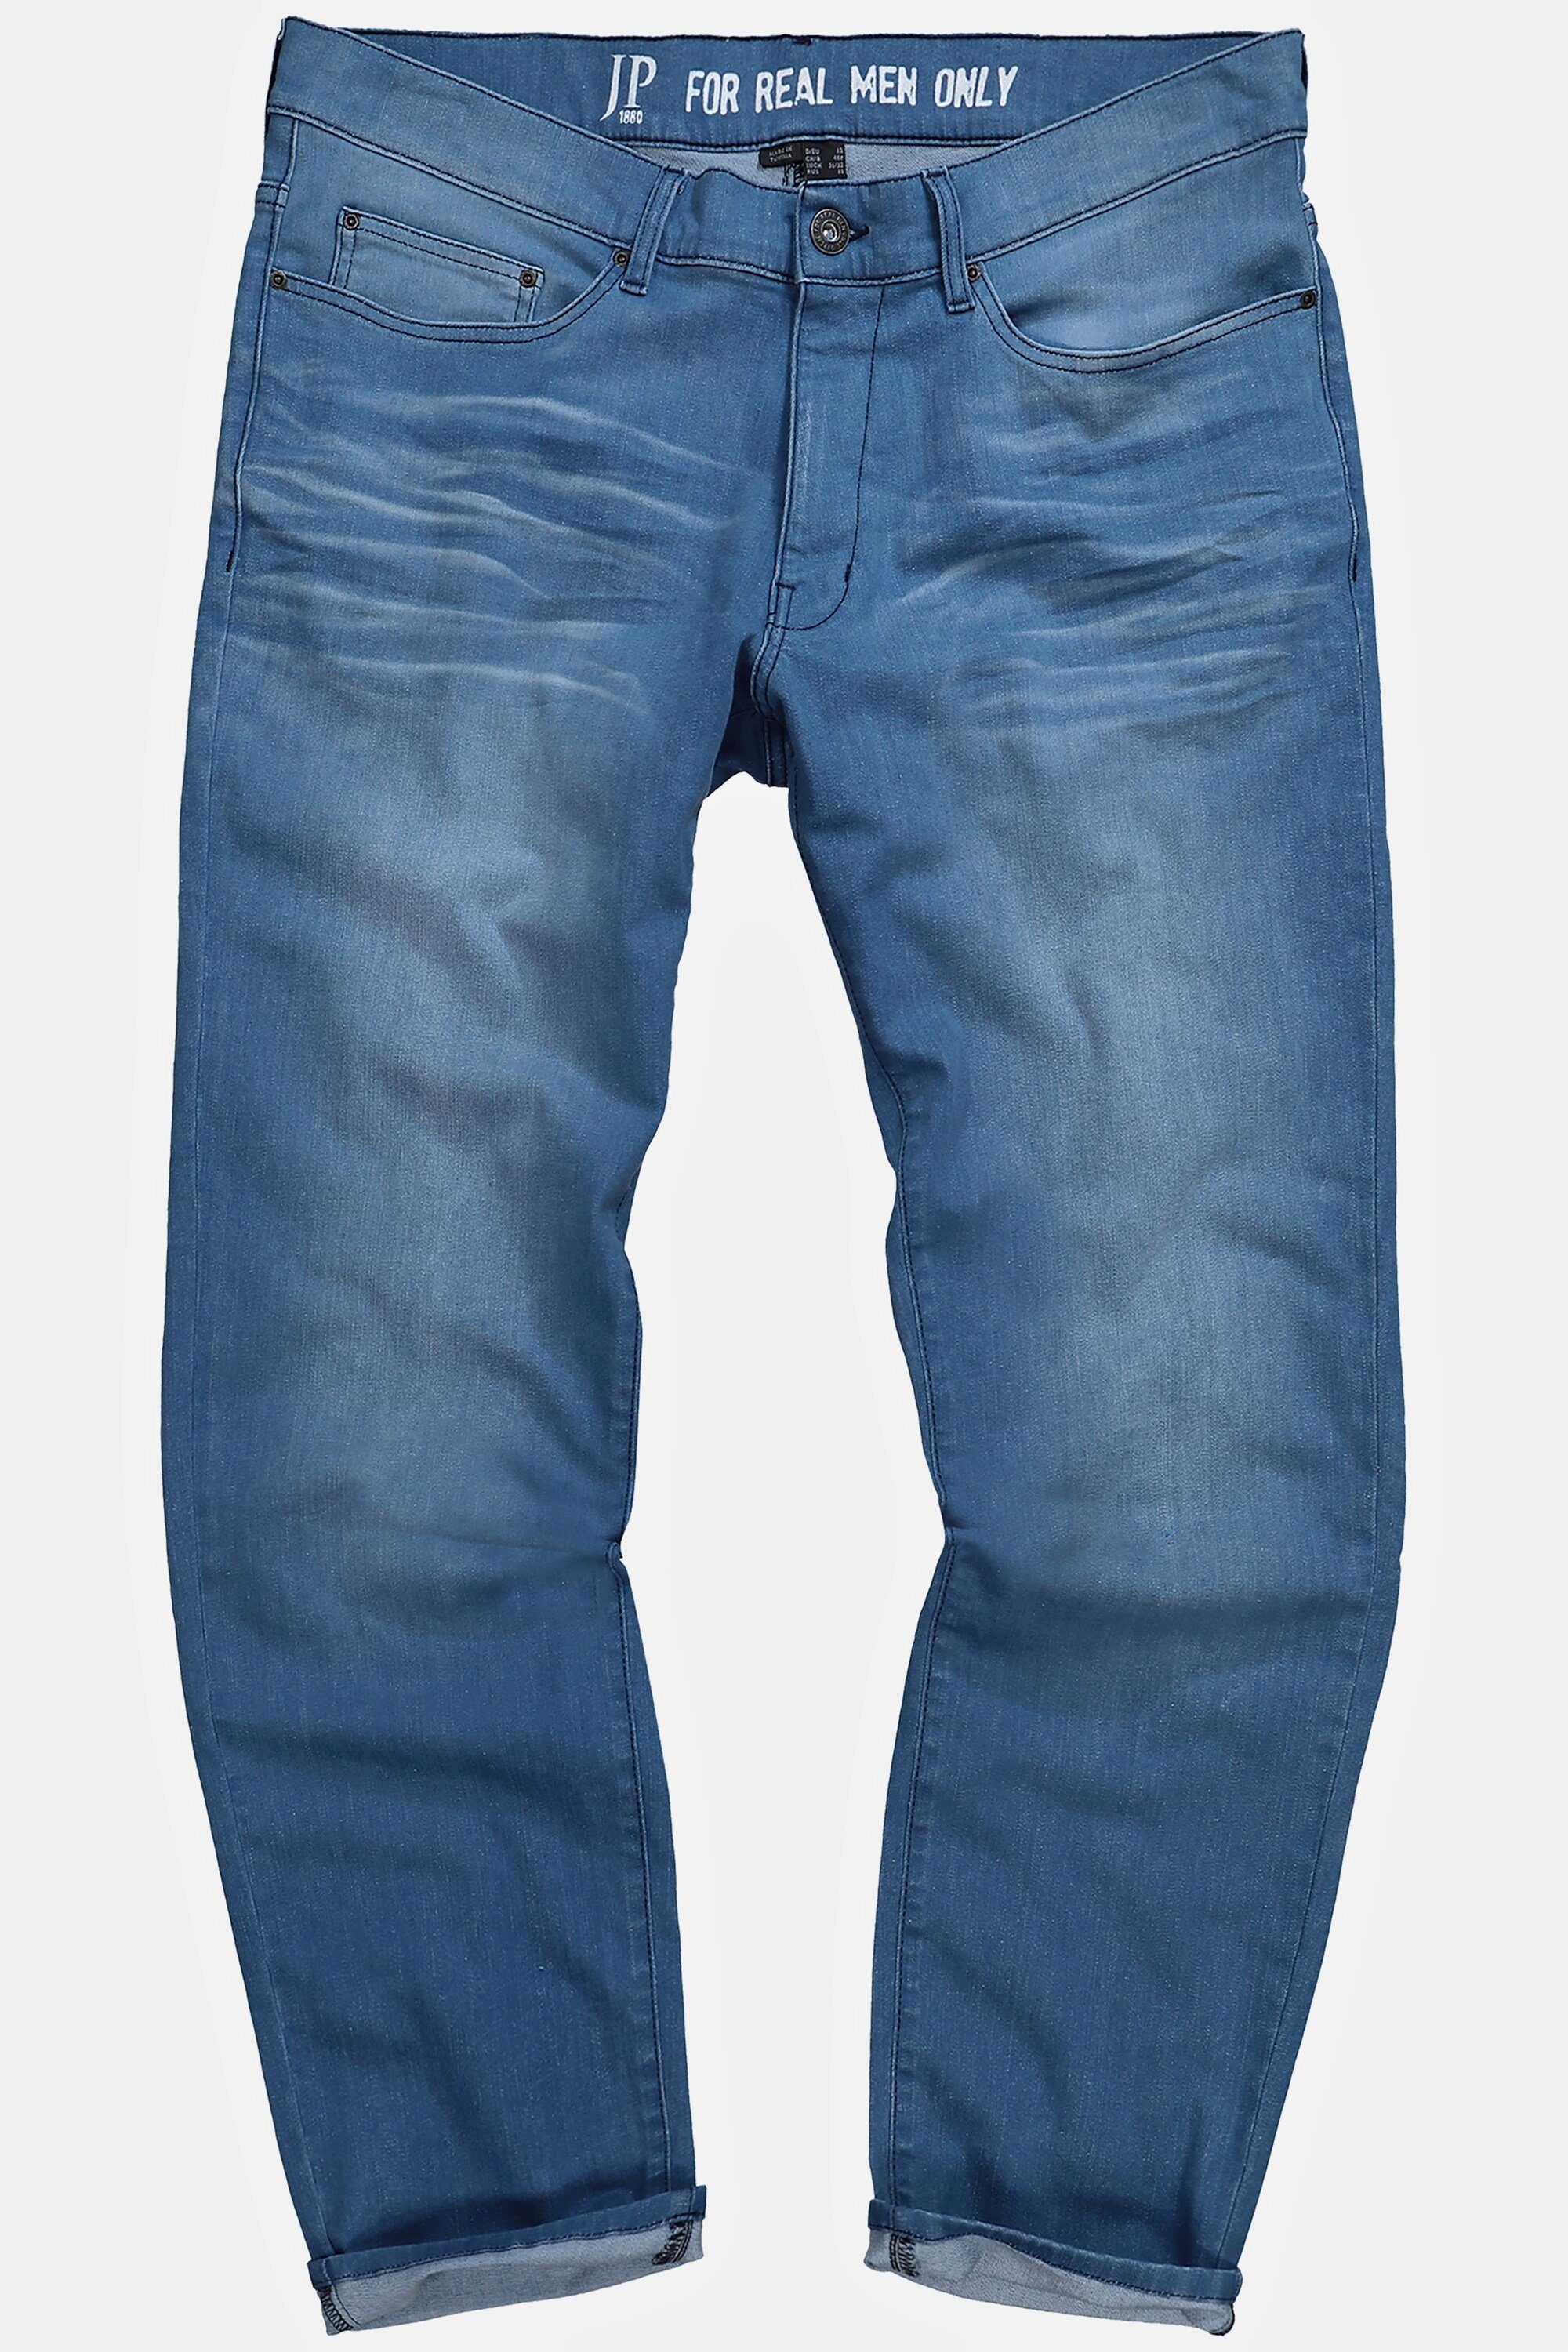 Vintage JP1880 Loose 5-Pocket-Jeans blue light Denim Tapered Jeans Look Fit